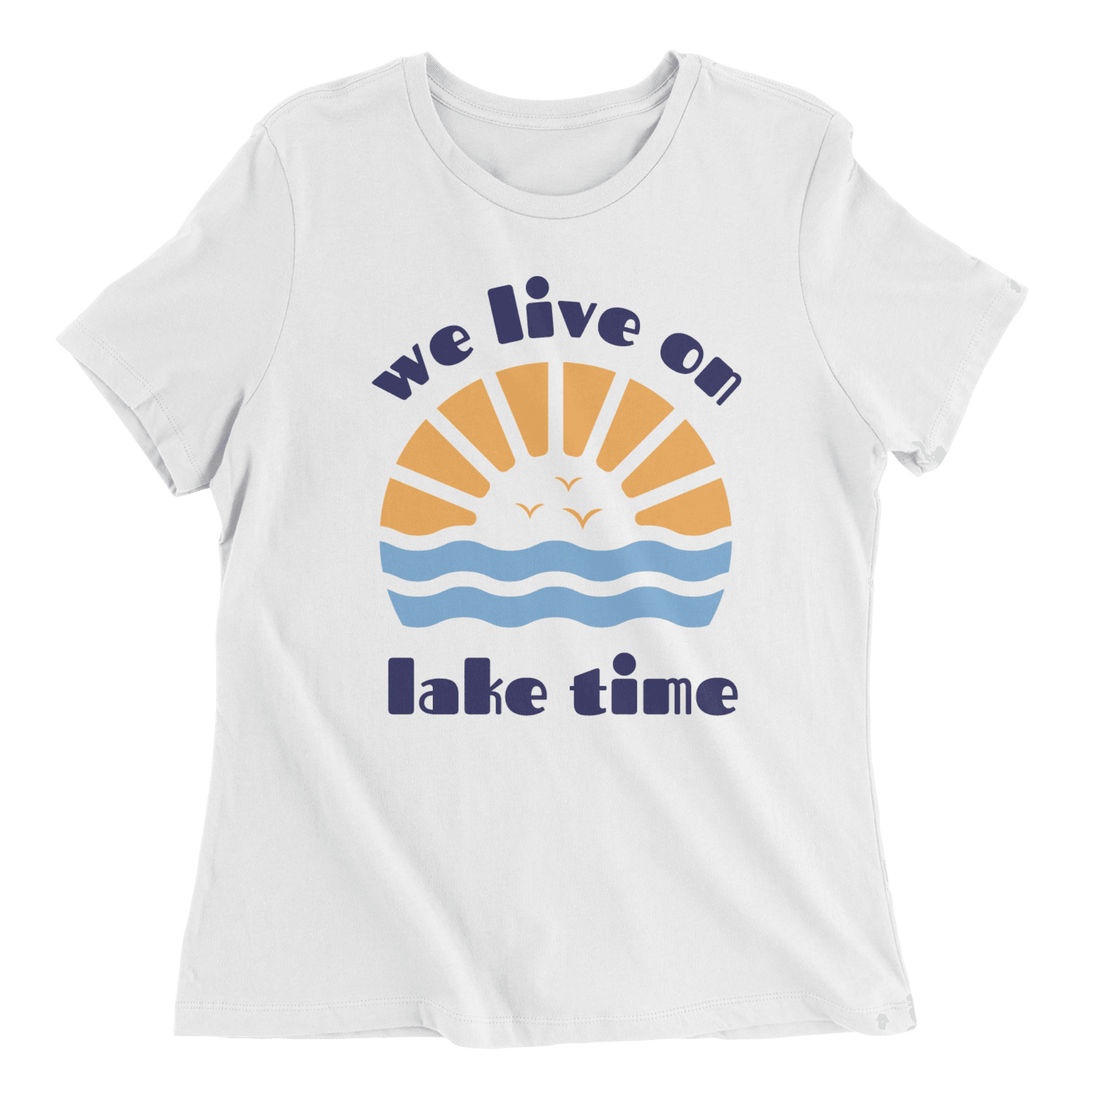 Lake Time - The T-Shirt Deli, Co.